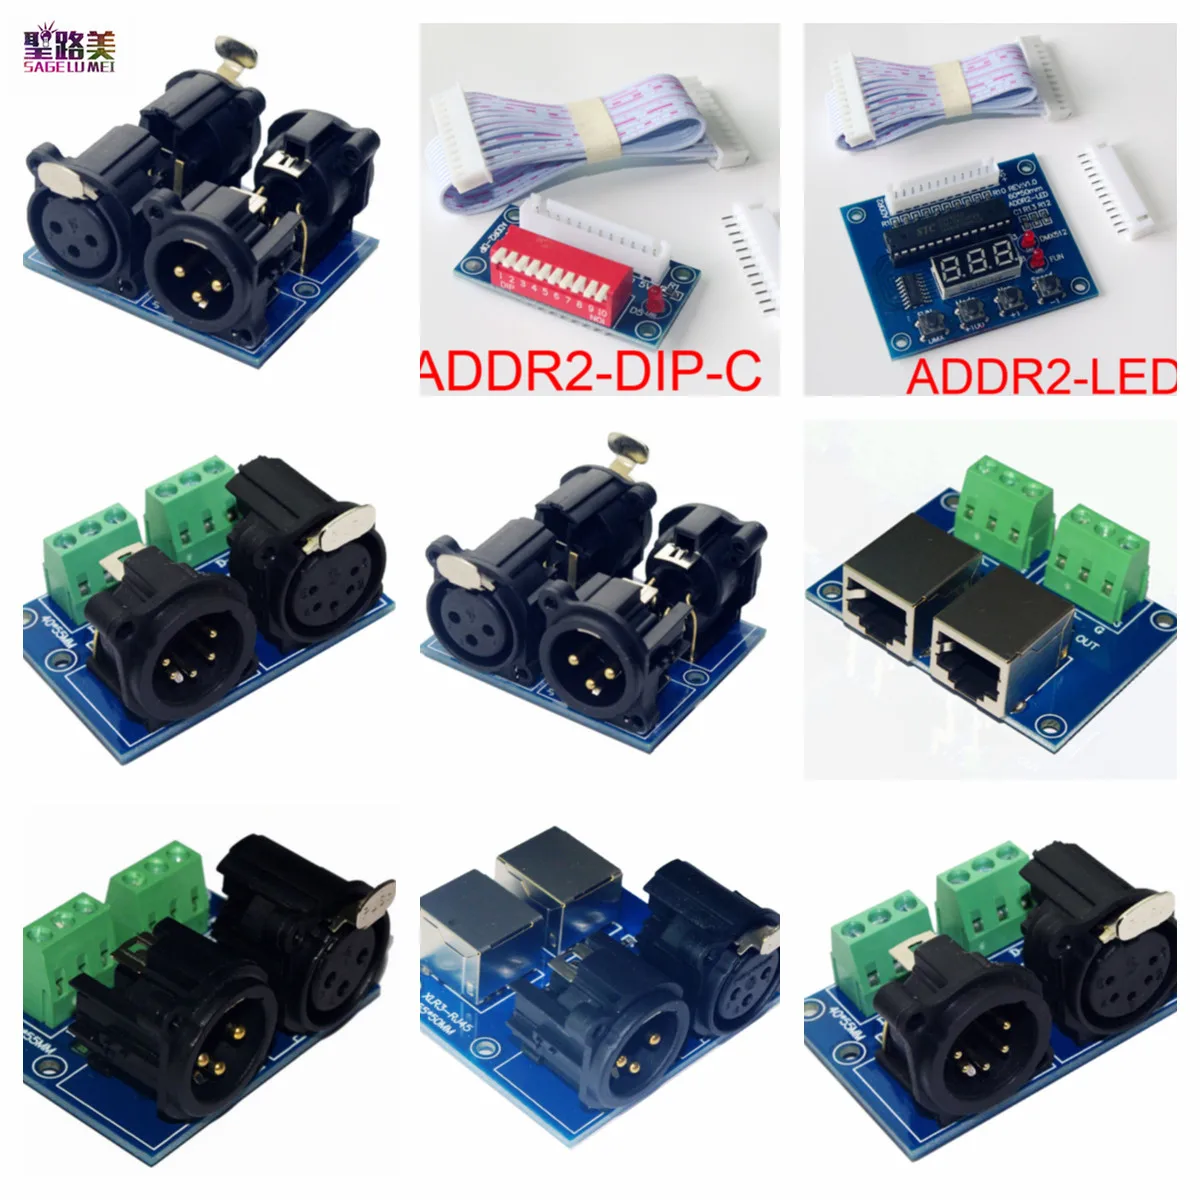 

Terminal Adapter Connector XLR to RJ45-3P/XLR3-3P/XLR5-3P/XLR5-XLR3/XLR5-XLR3/XLR3-RJ45/ADDR2-DIP-Z/ADDR2-LED For DMX Decoder